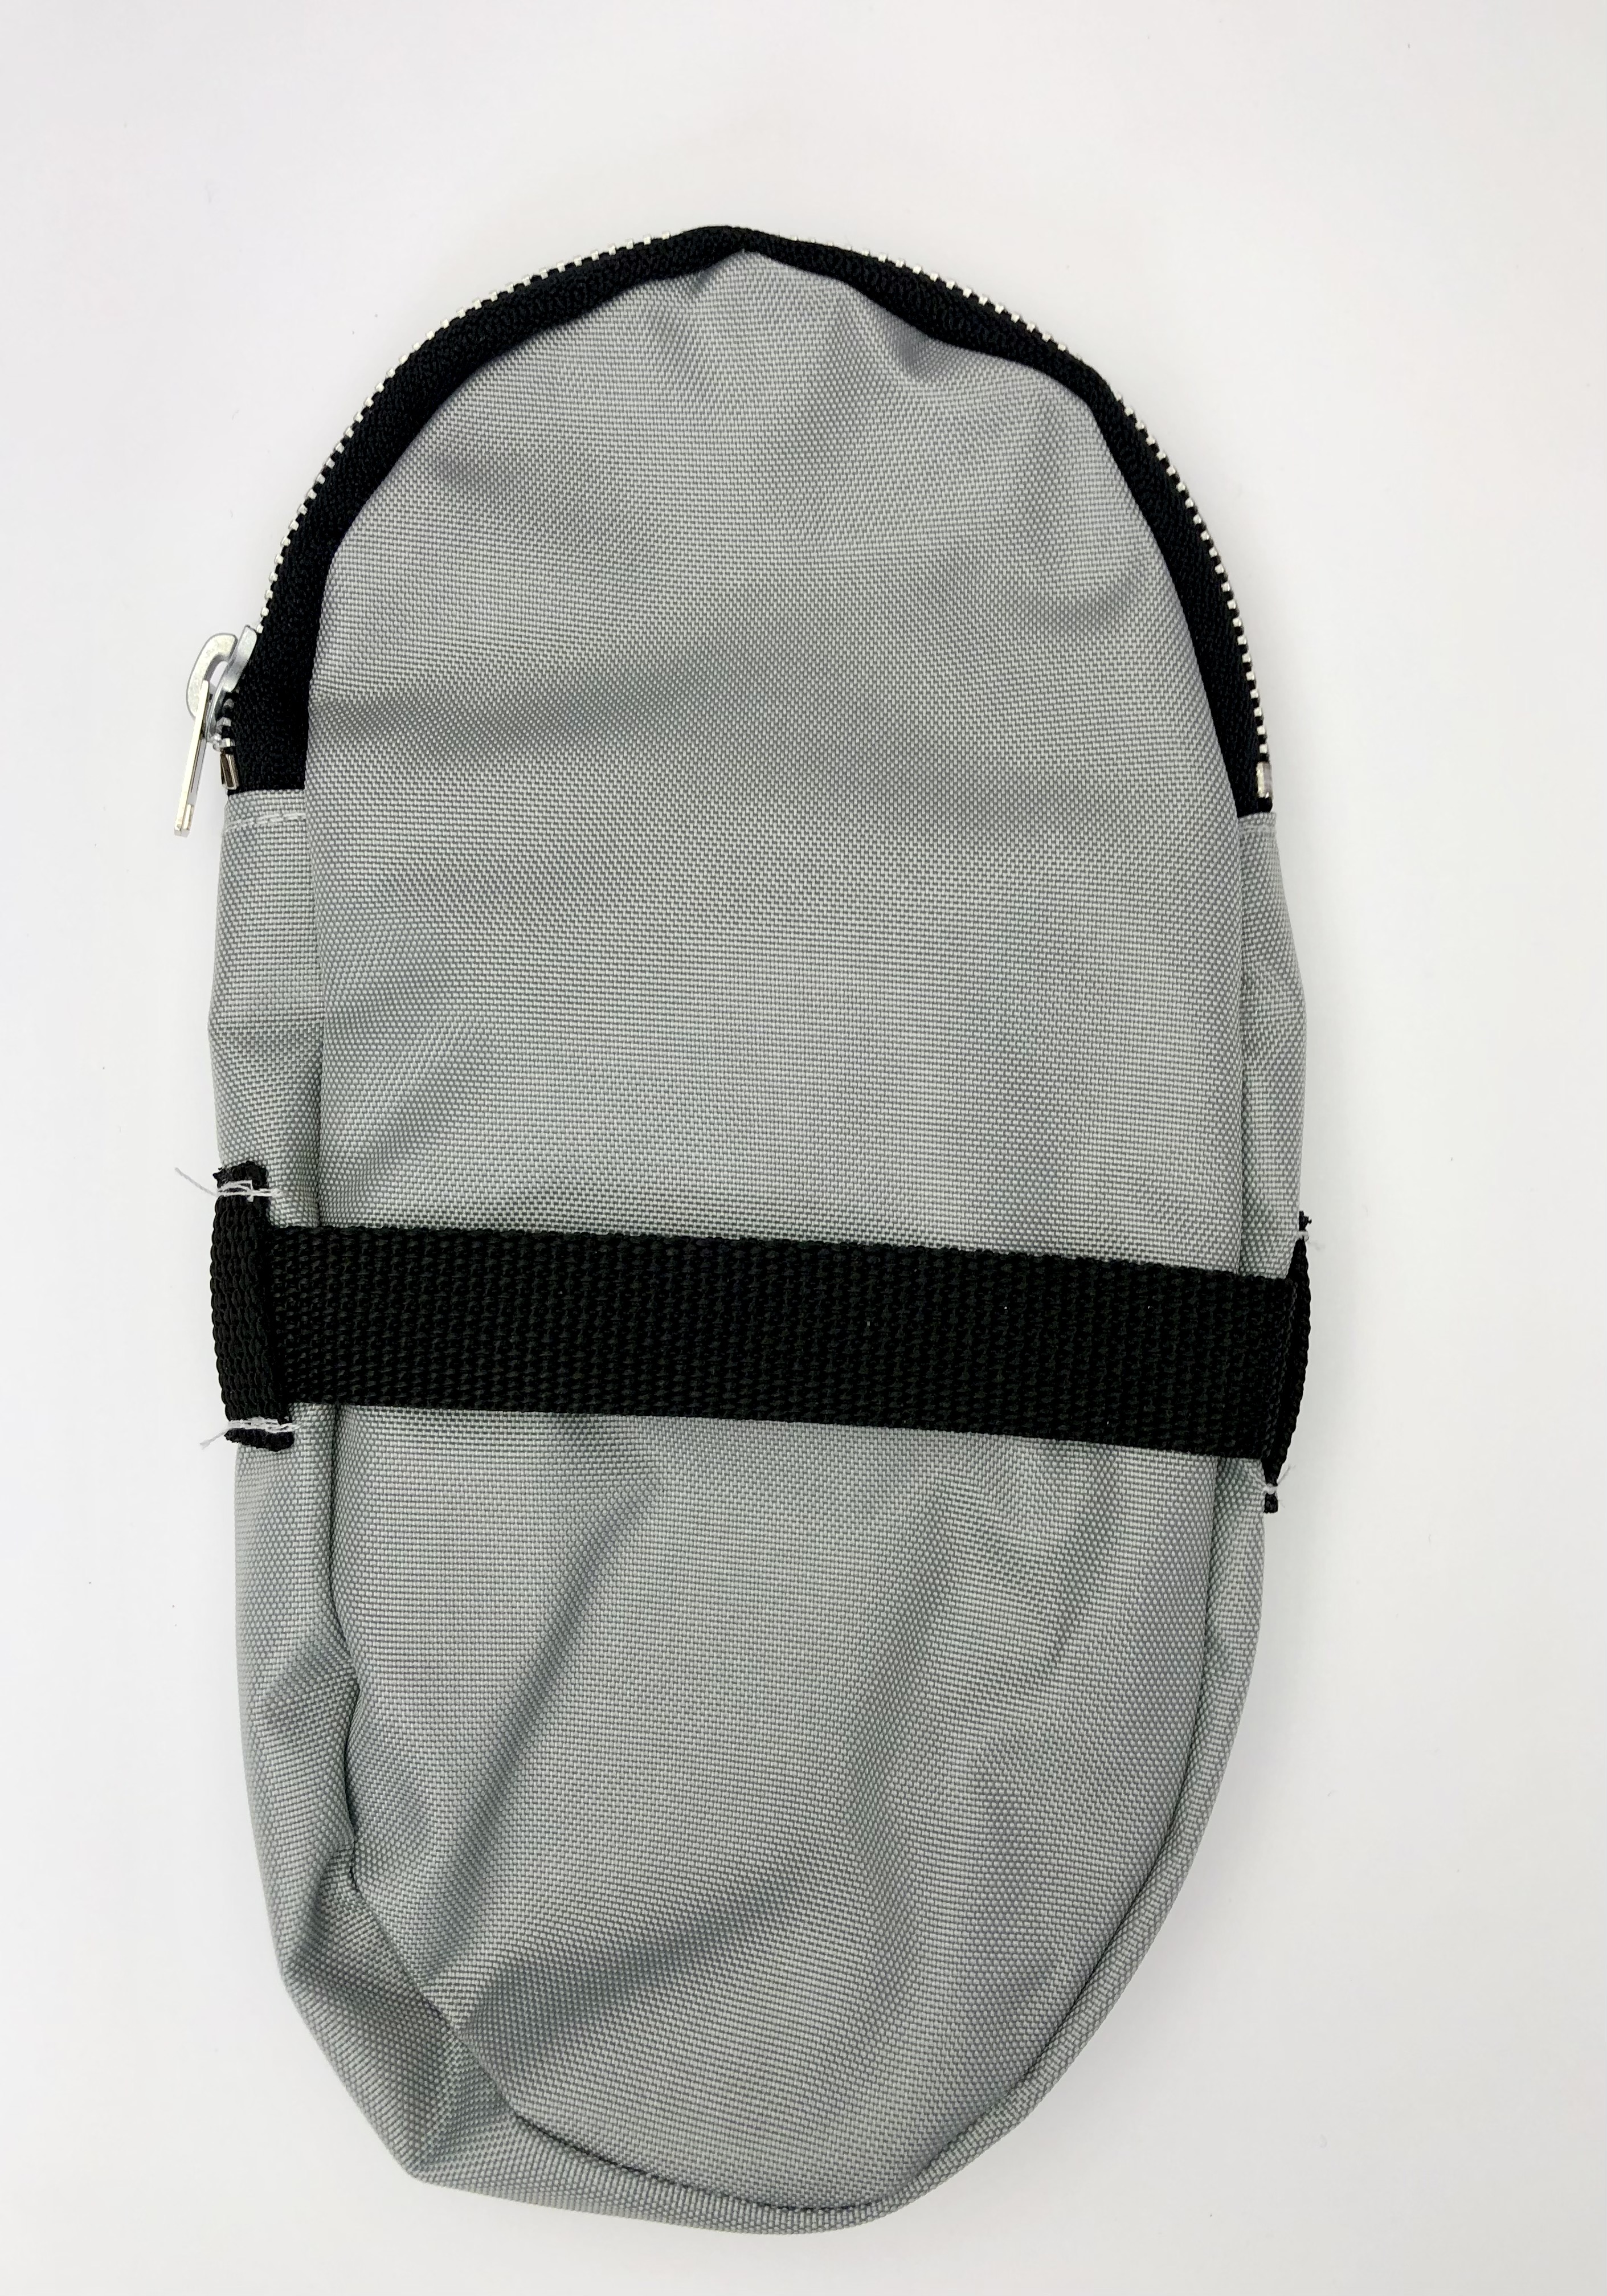 Saddlebag, Racing Bike, tire or tube bag, nylon grey